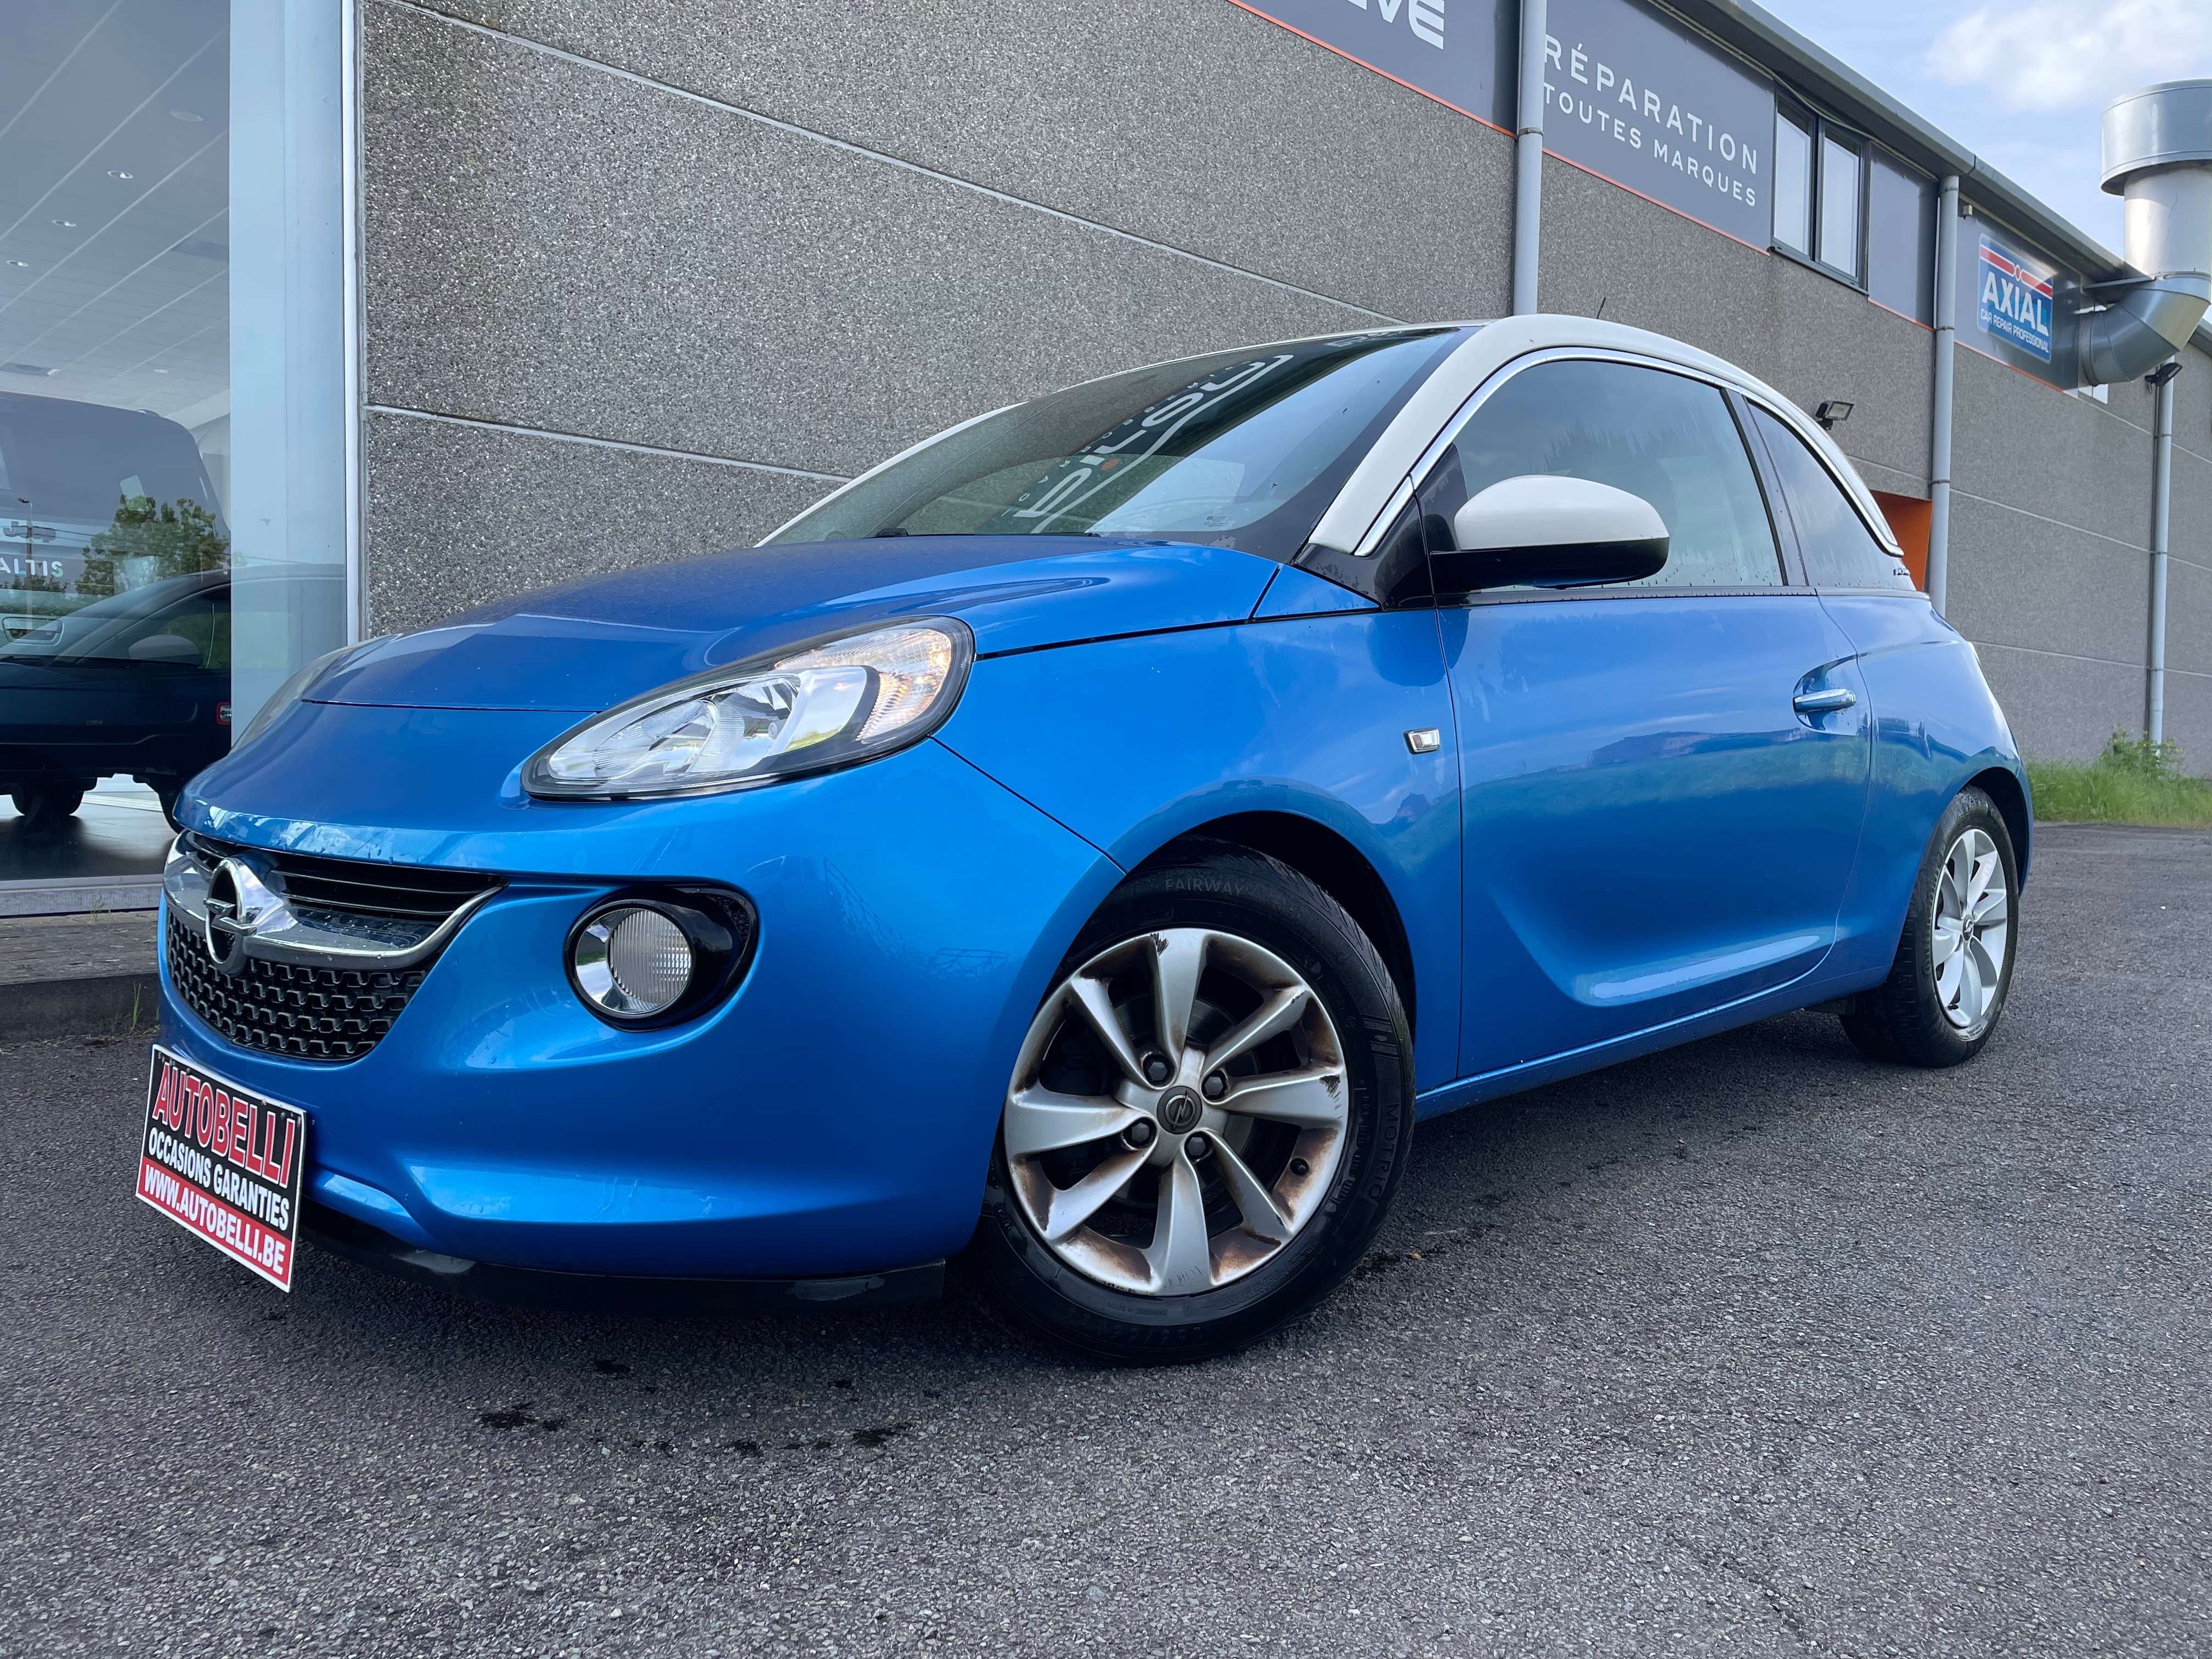 Opel Adam Sedan in Blue used in Wanze for € 6,990.-